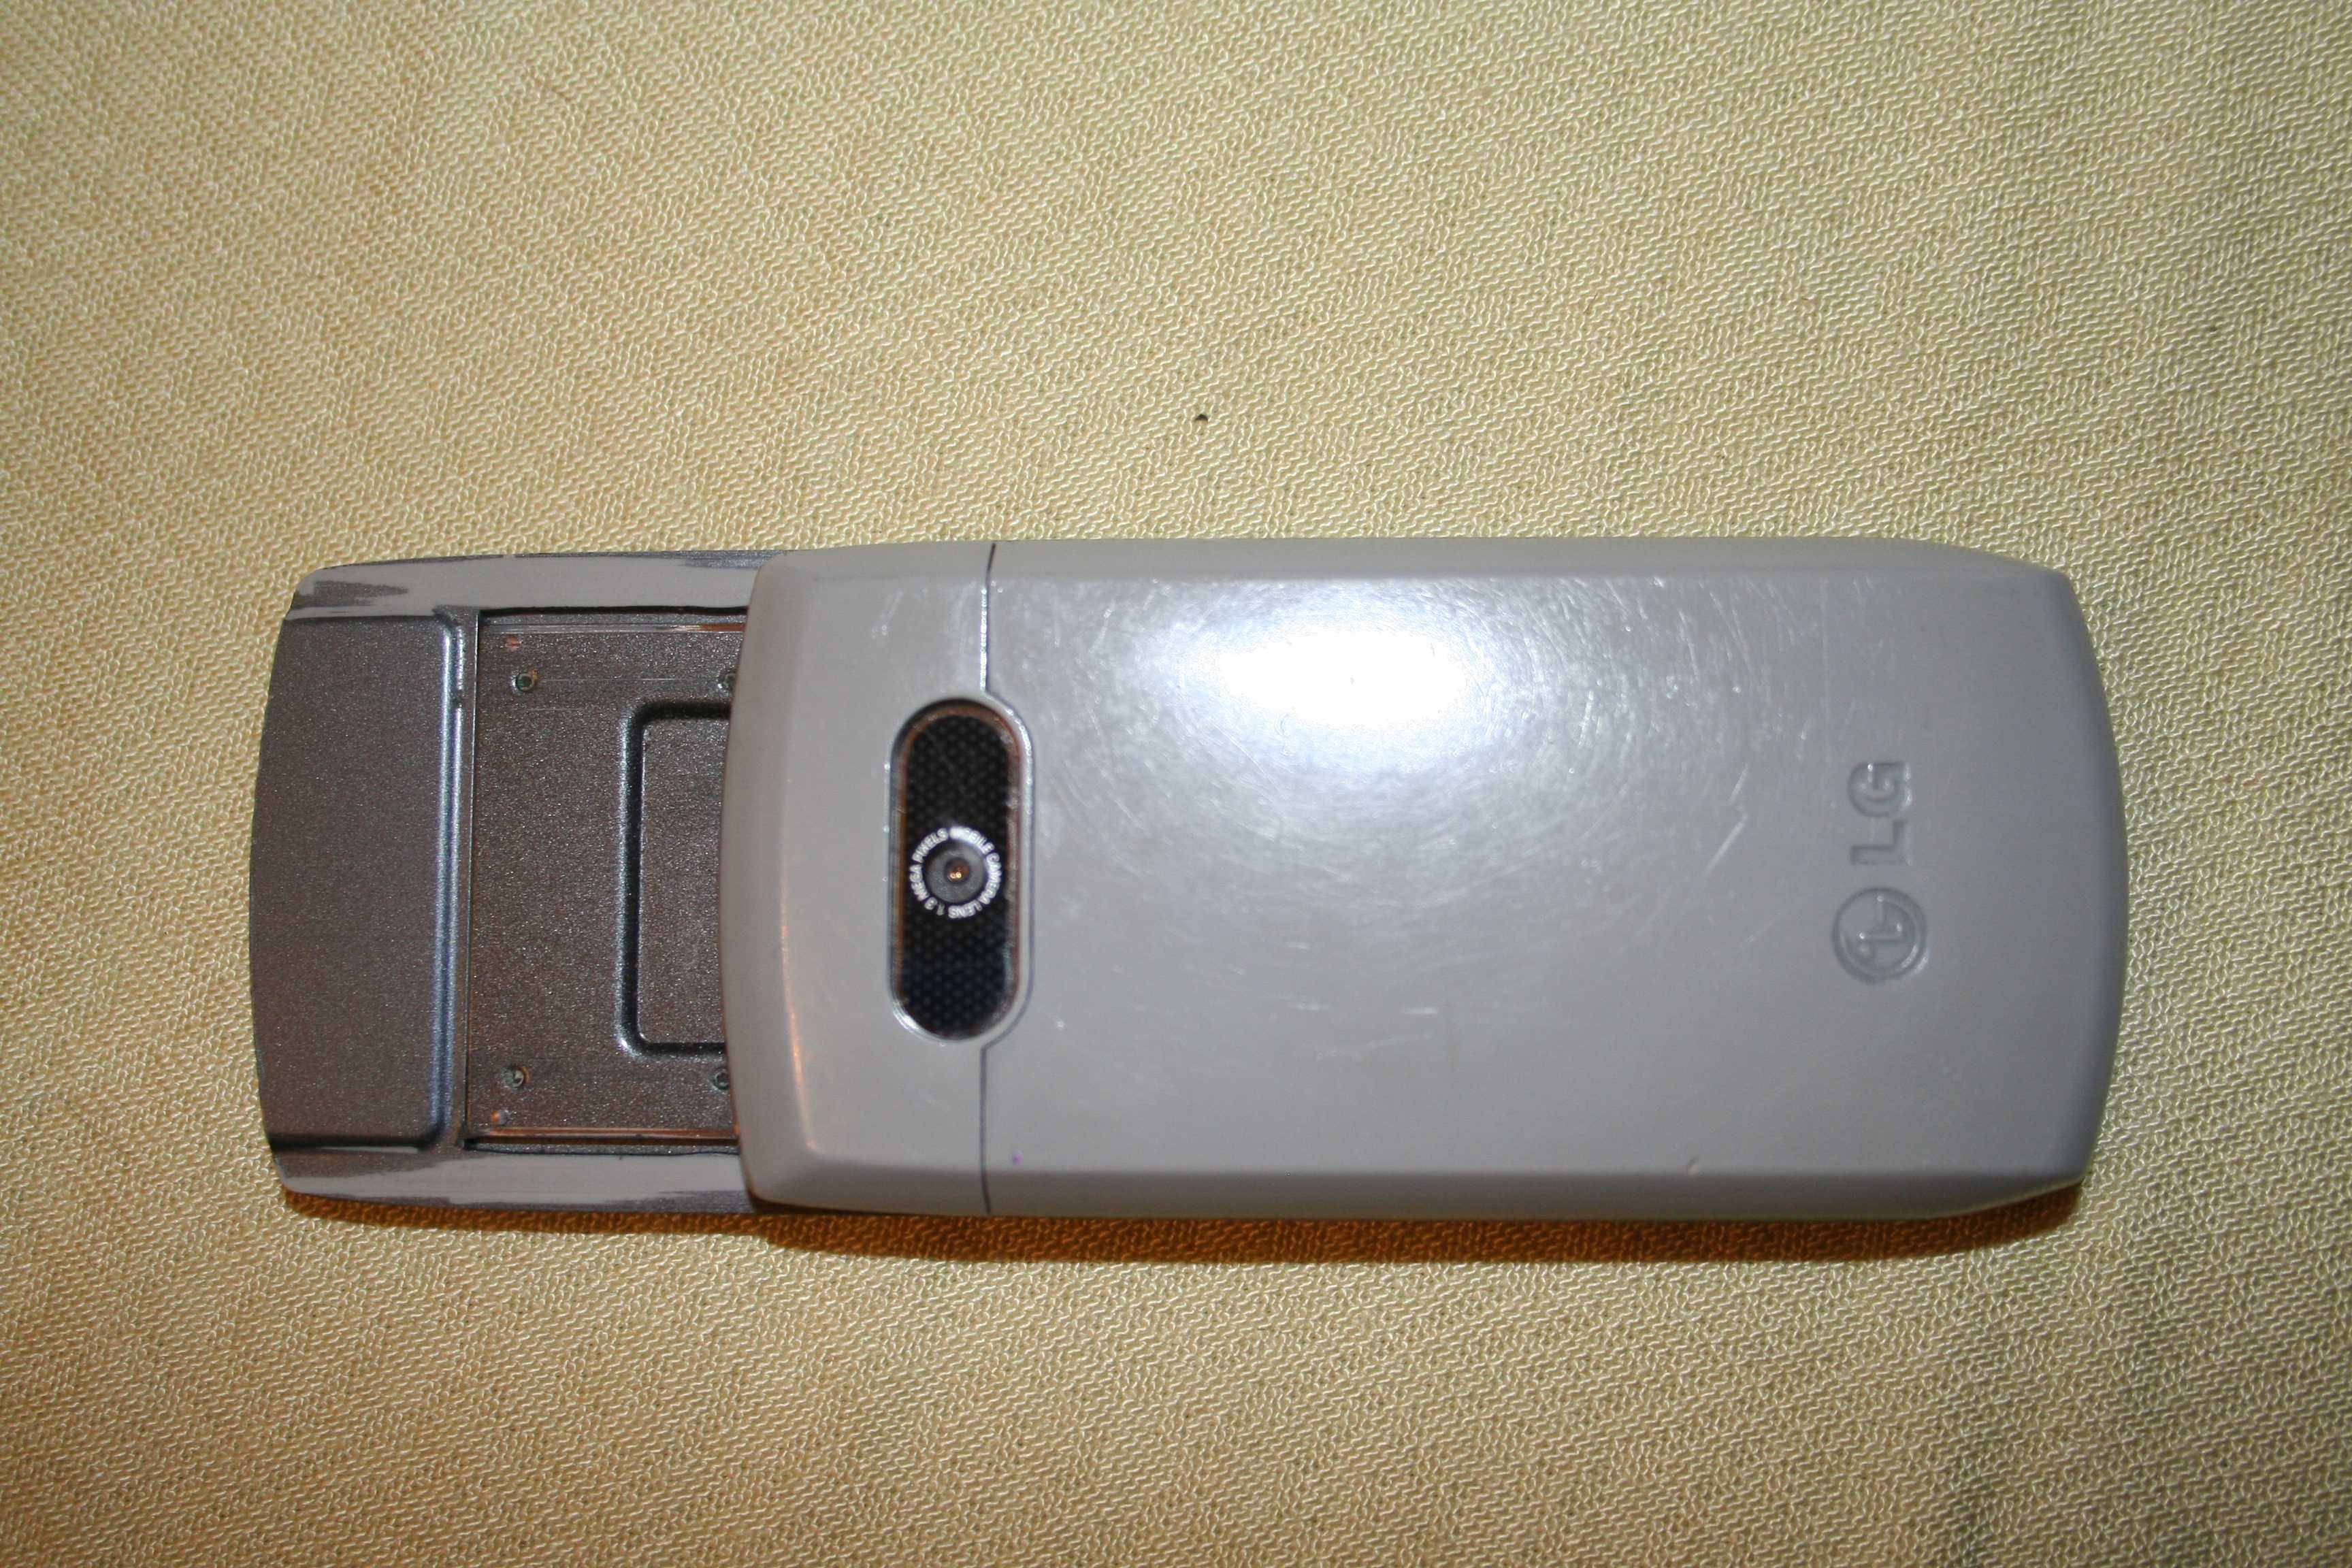 GSM LG използван